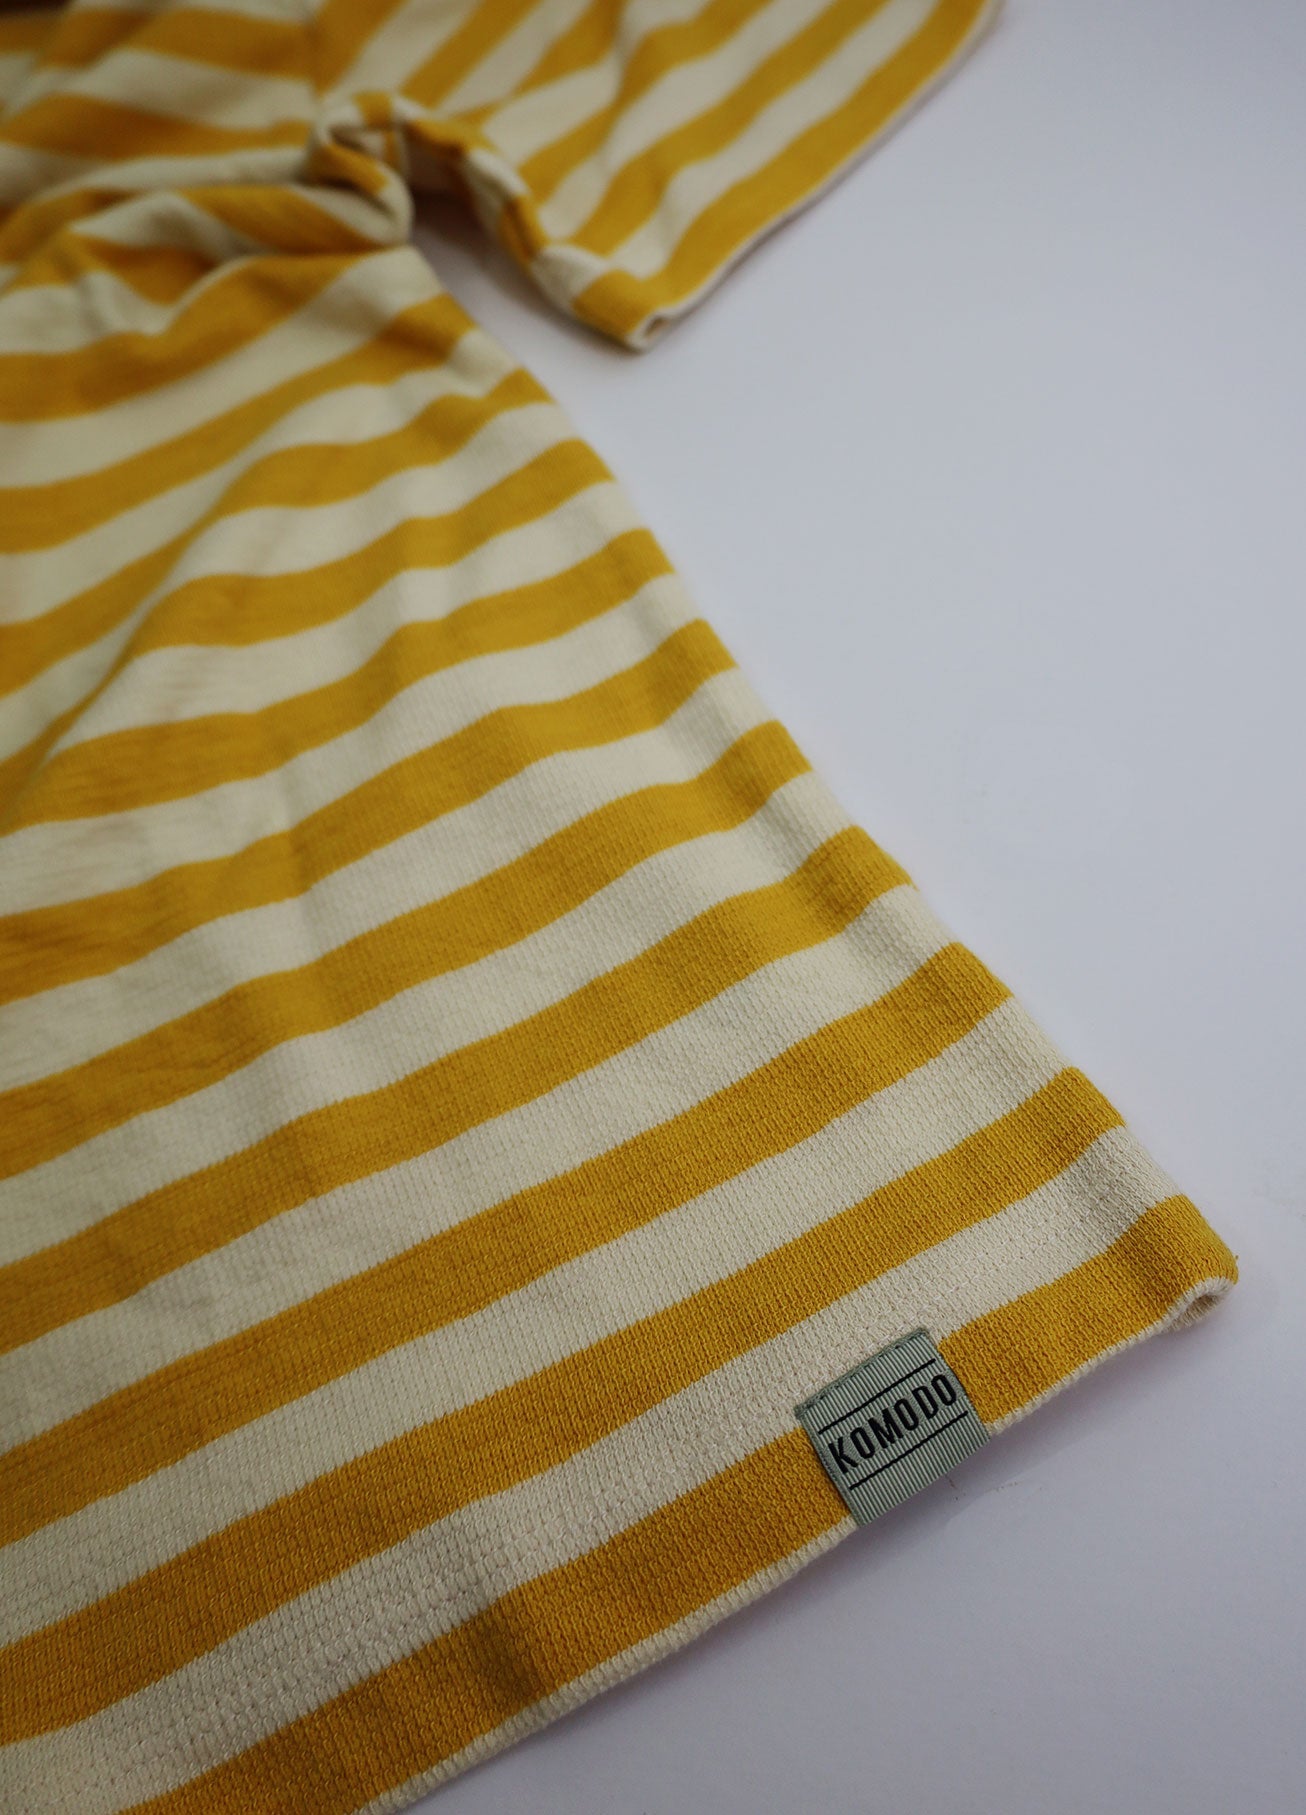 Gelb-weiss, gestreiftes T-Shirt KIN aus Bio-Baumwolle von Komodo